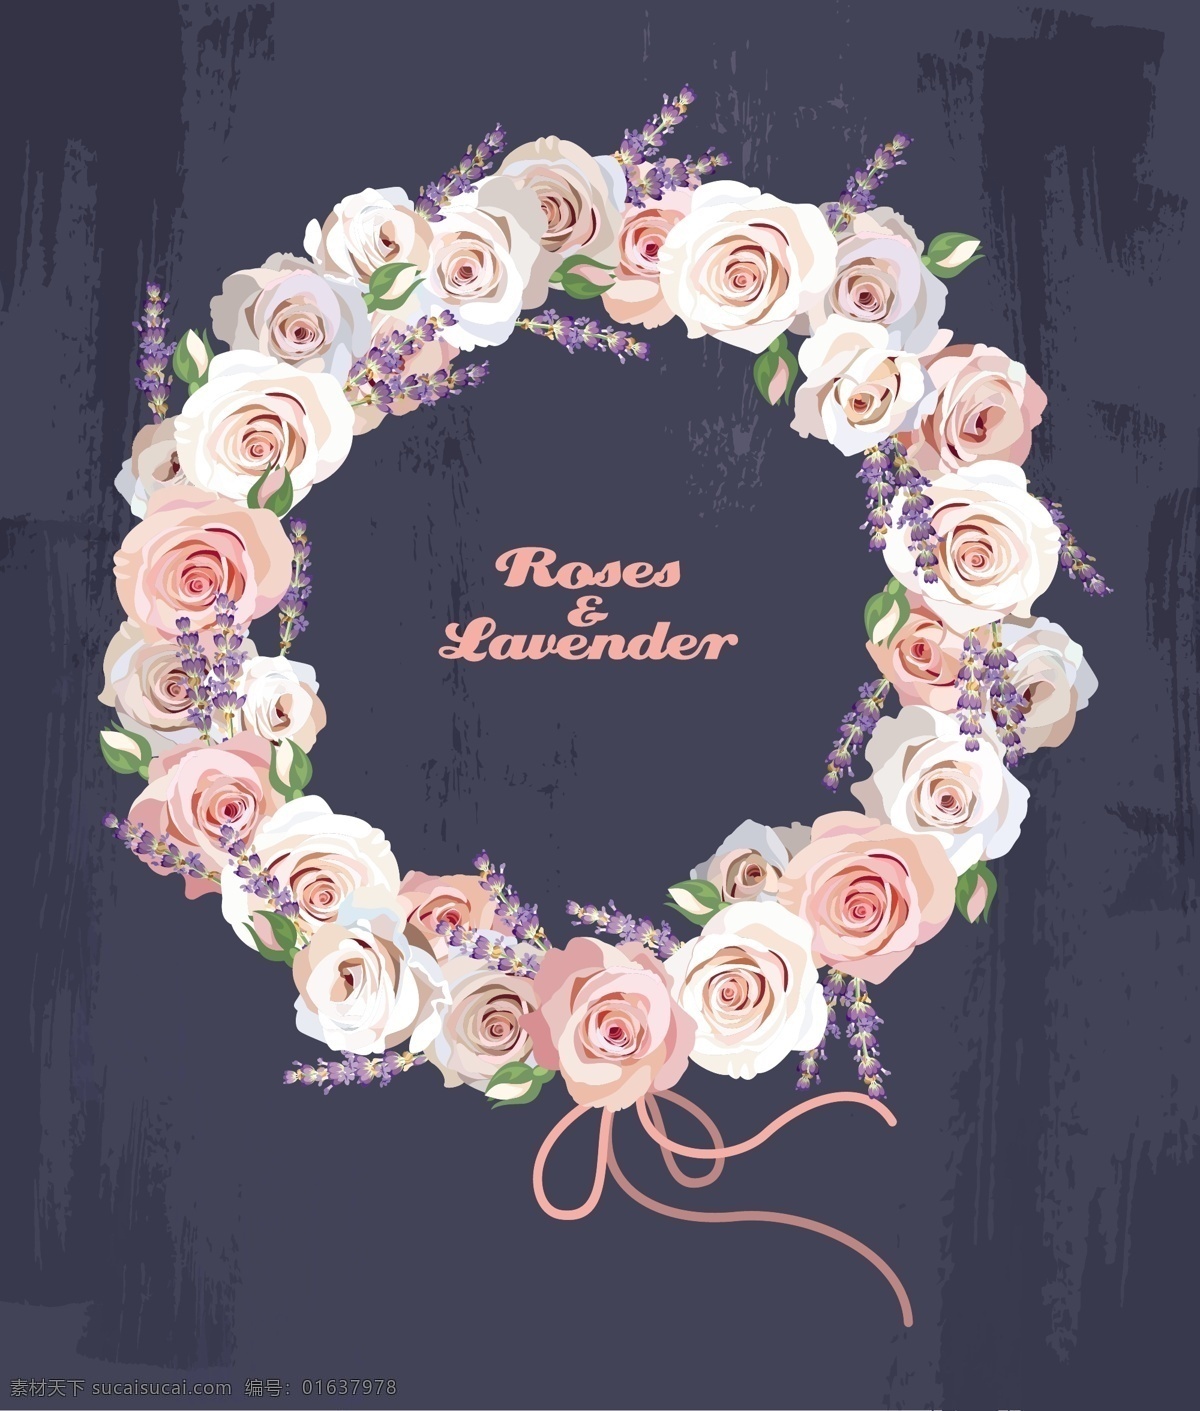 淡 粉色 少女 唯美 水彩 婚礼 花朵 矢量 背景 花卉 矢量素材 背景素材 淡粉色 玫瑰 设计素材